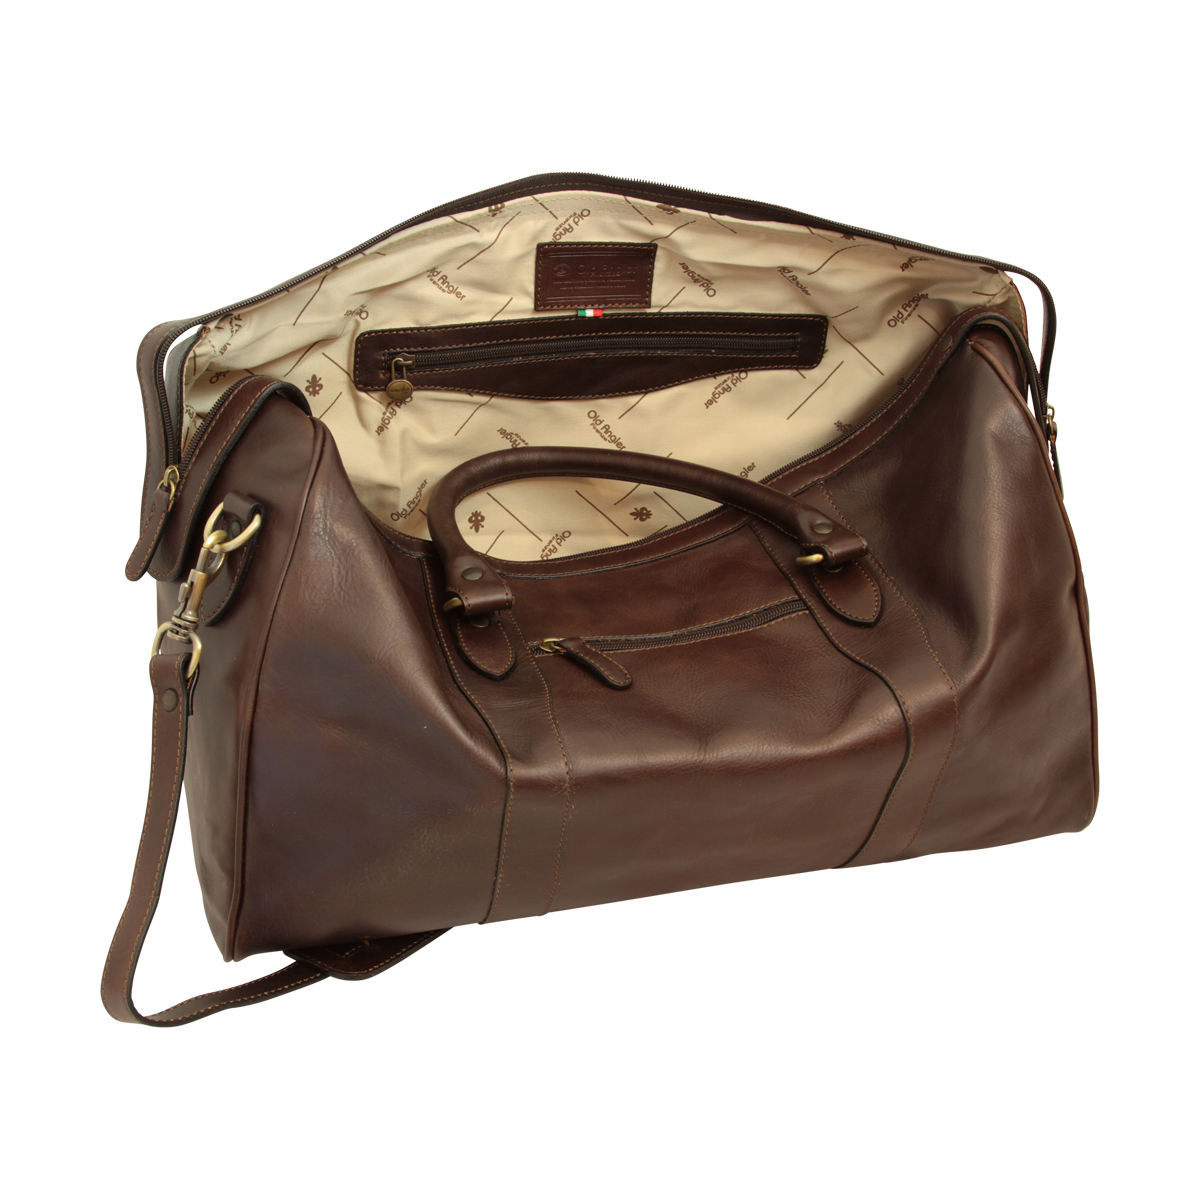 Travel Bag with shoulder strap - Dark Brown | 108889TM UK | Old Angler Firenze